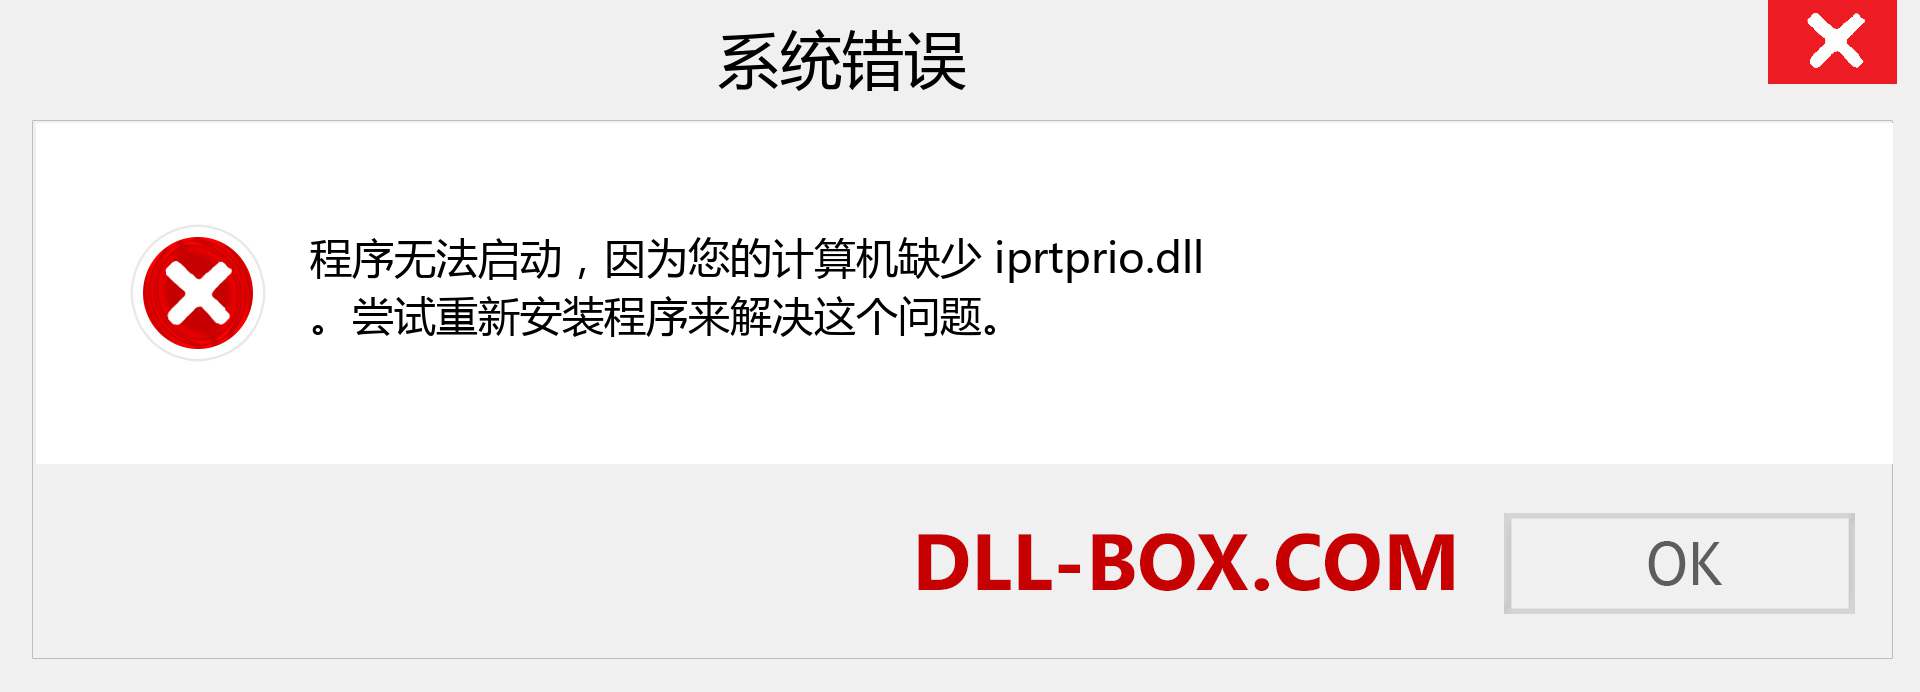 iprtprio.dll 文件丢失？。 适用于 Windows 7、8、10 的下载 - 修复 Windows、照片、图像上的 iprtprio dll 丢失错误